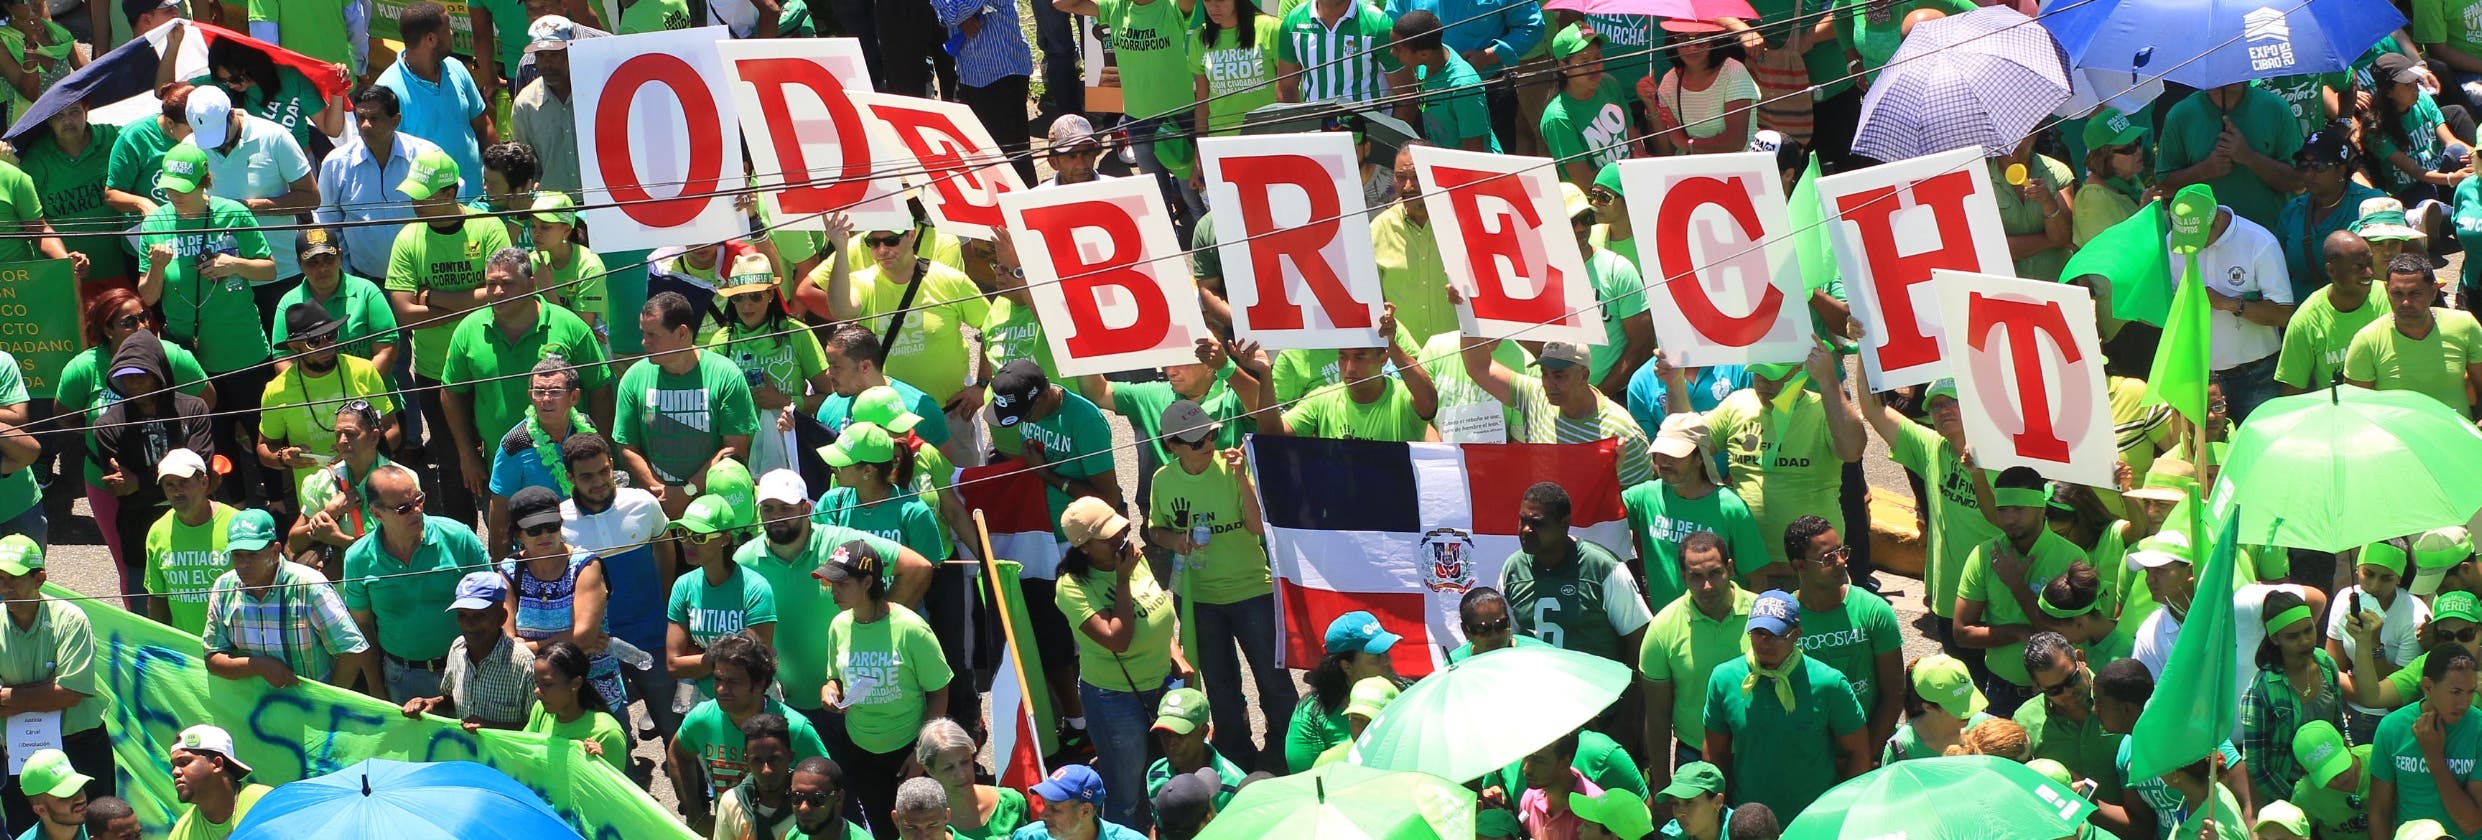 La Marcha Verde se ha movilizado por las principales provincias del país para repudiar la corrupción y la impunidad, tomando el caso de Odebrecht como bandera.   ARCHIVO.